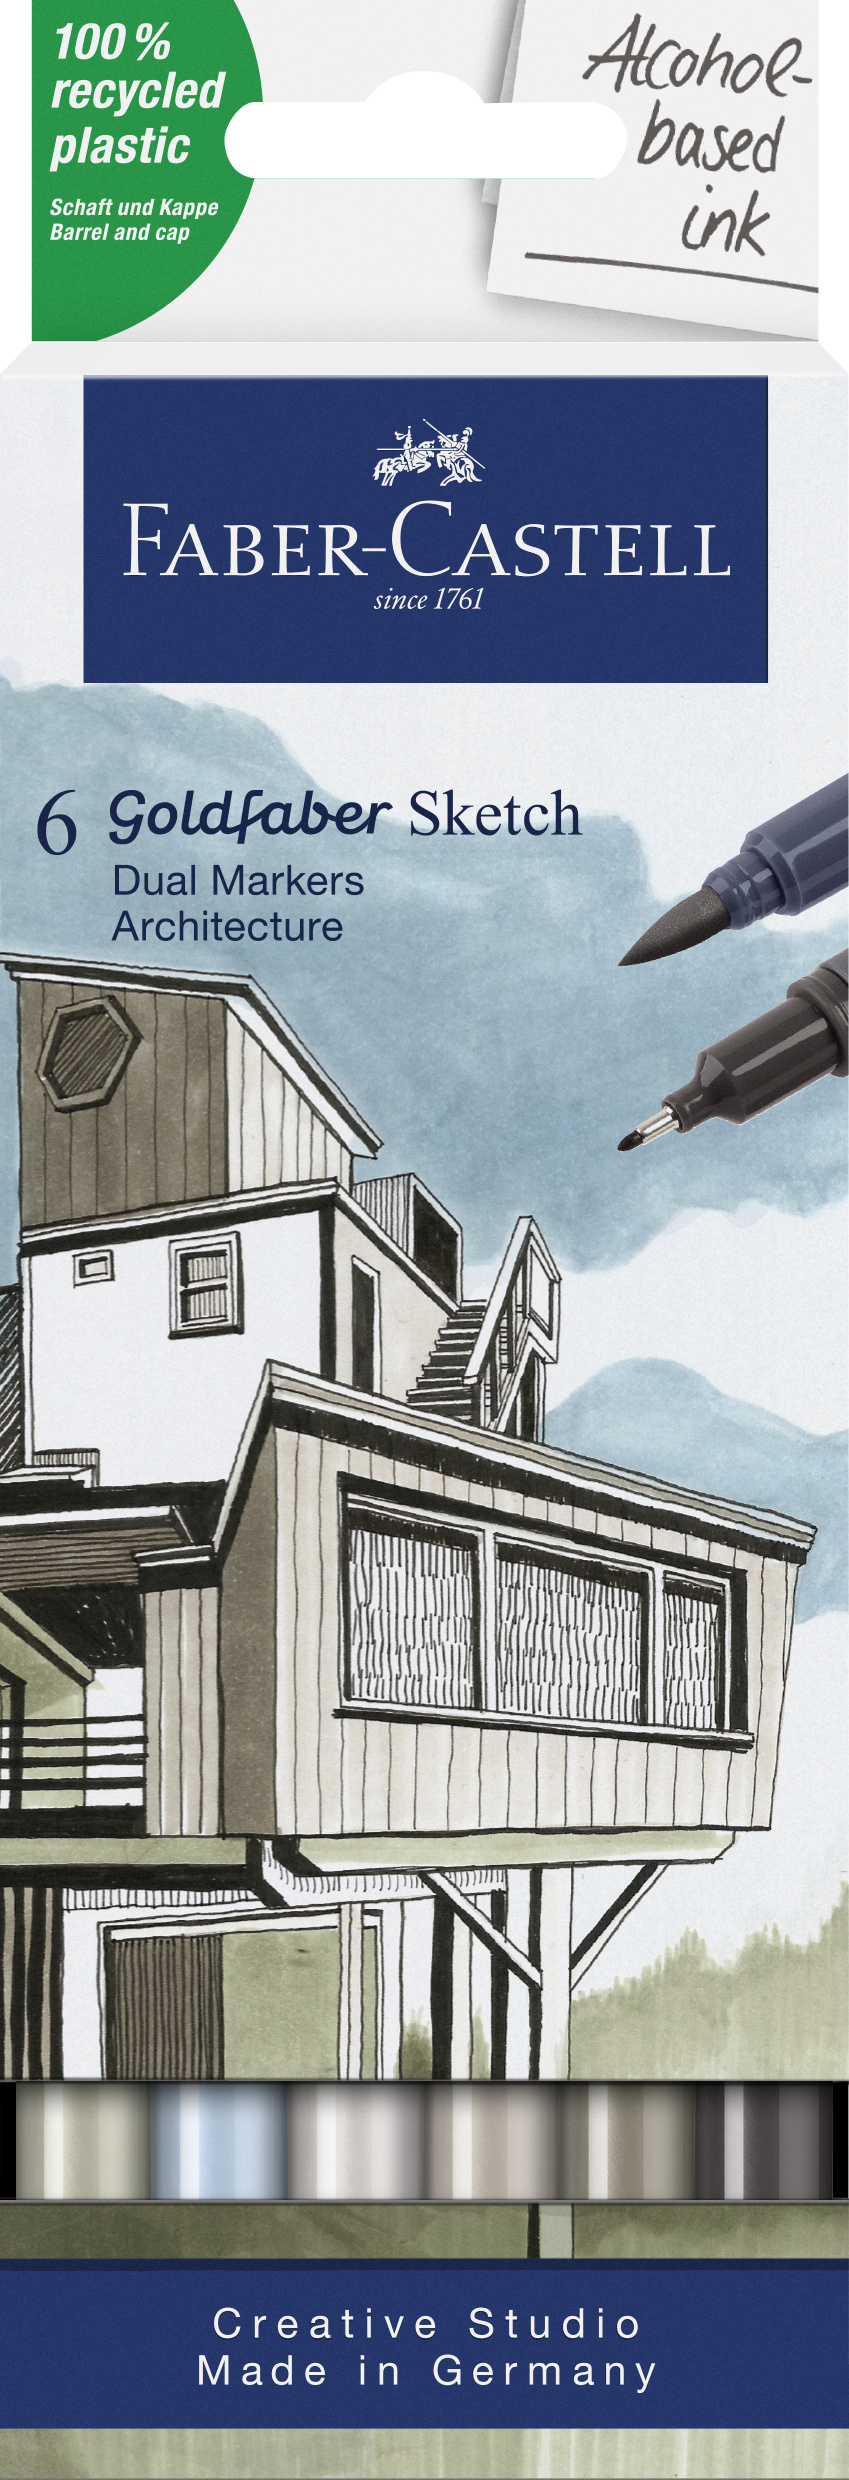 Faber-Castell_Goldfaber Sketch Marker, 6er set, Architecture_EUR 18,00